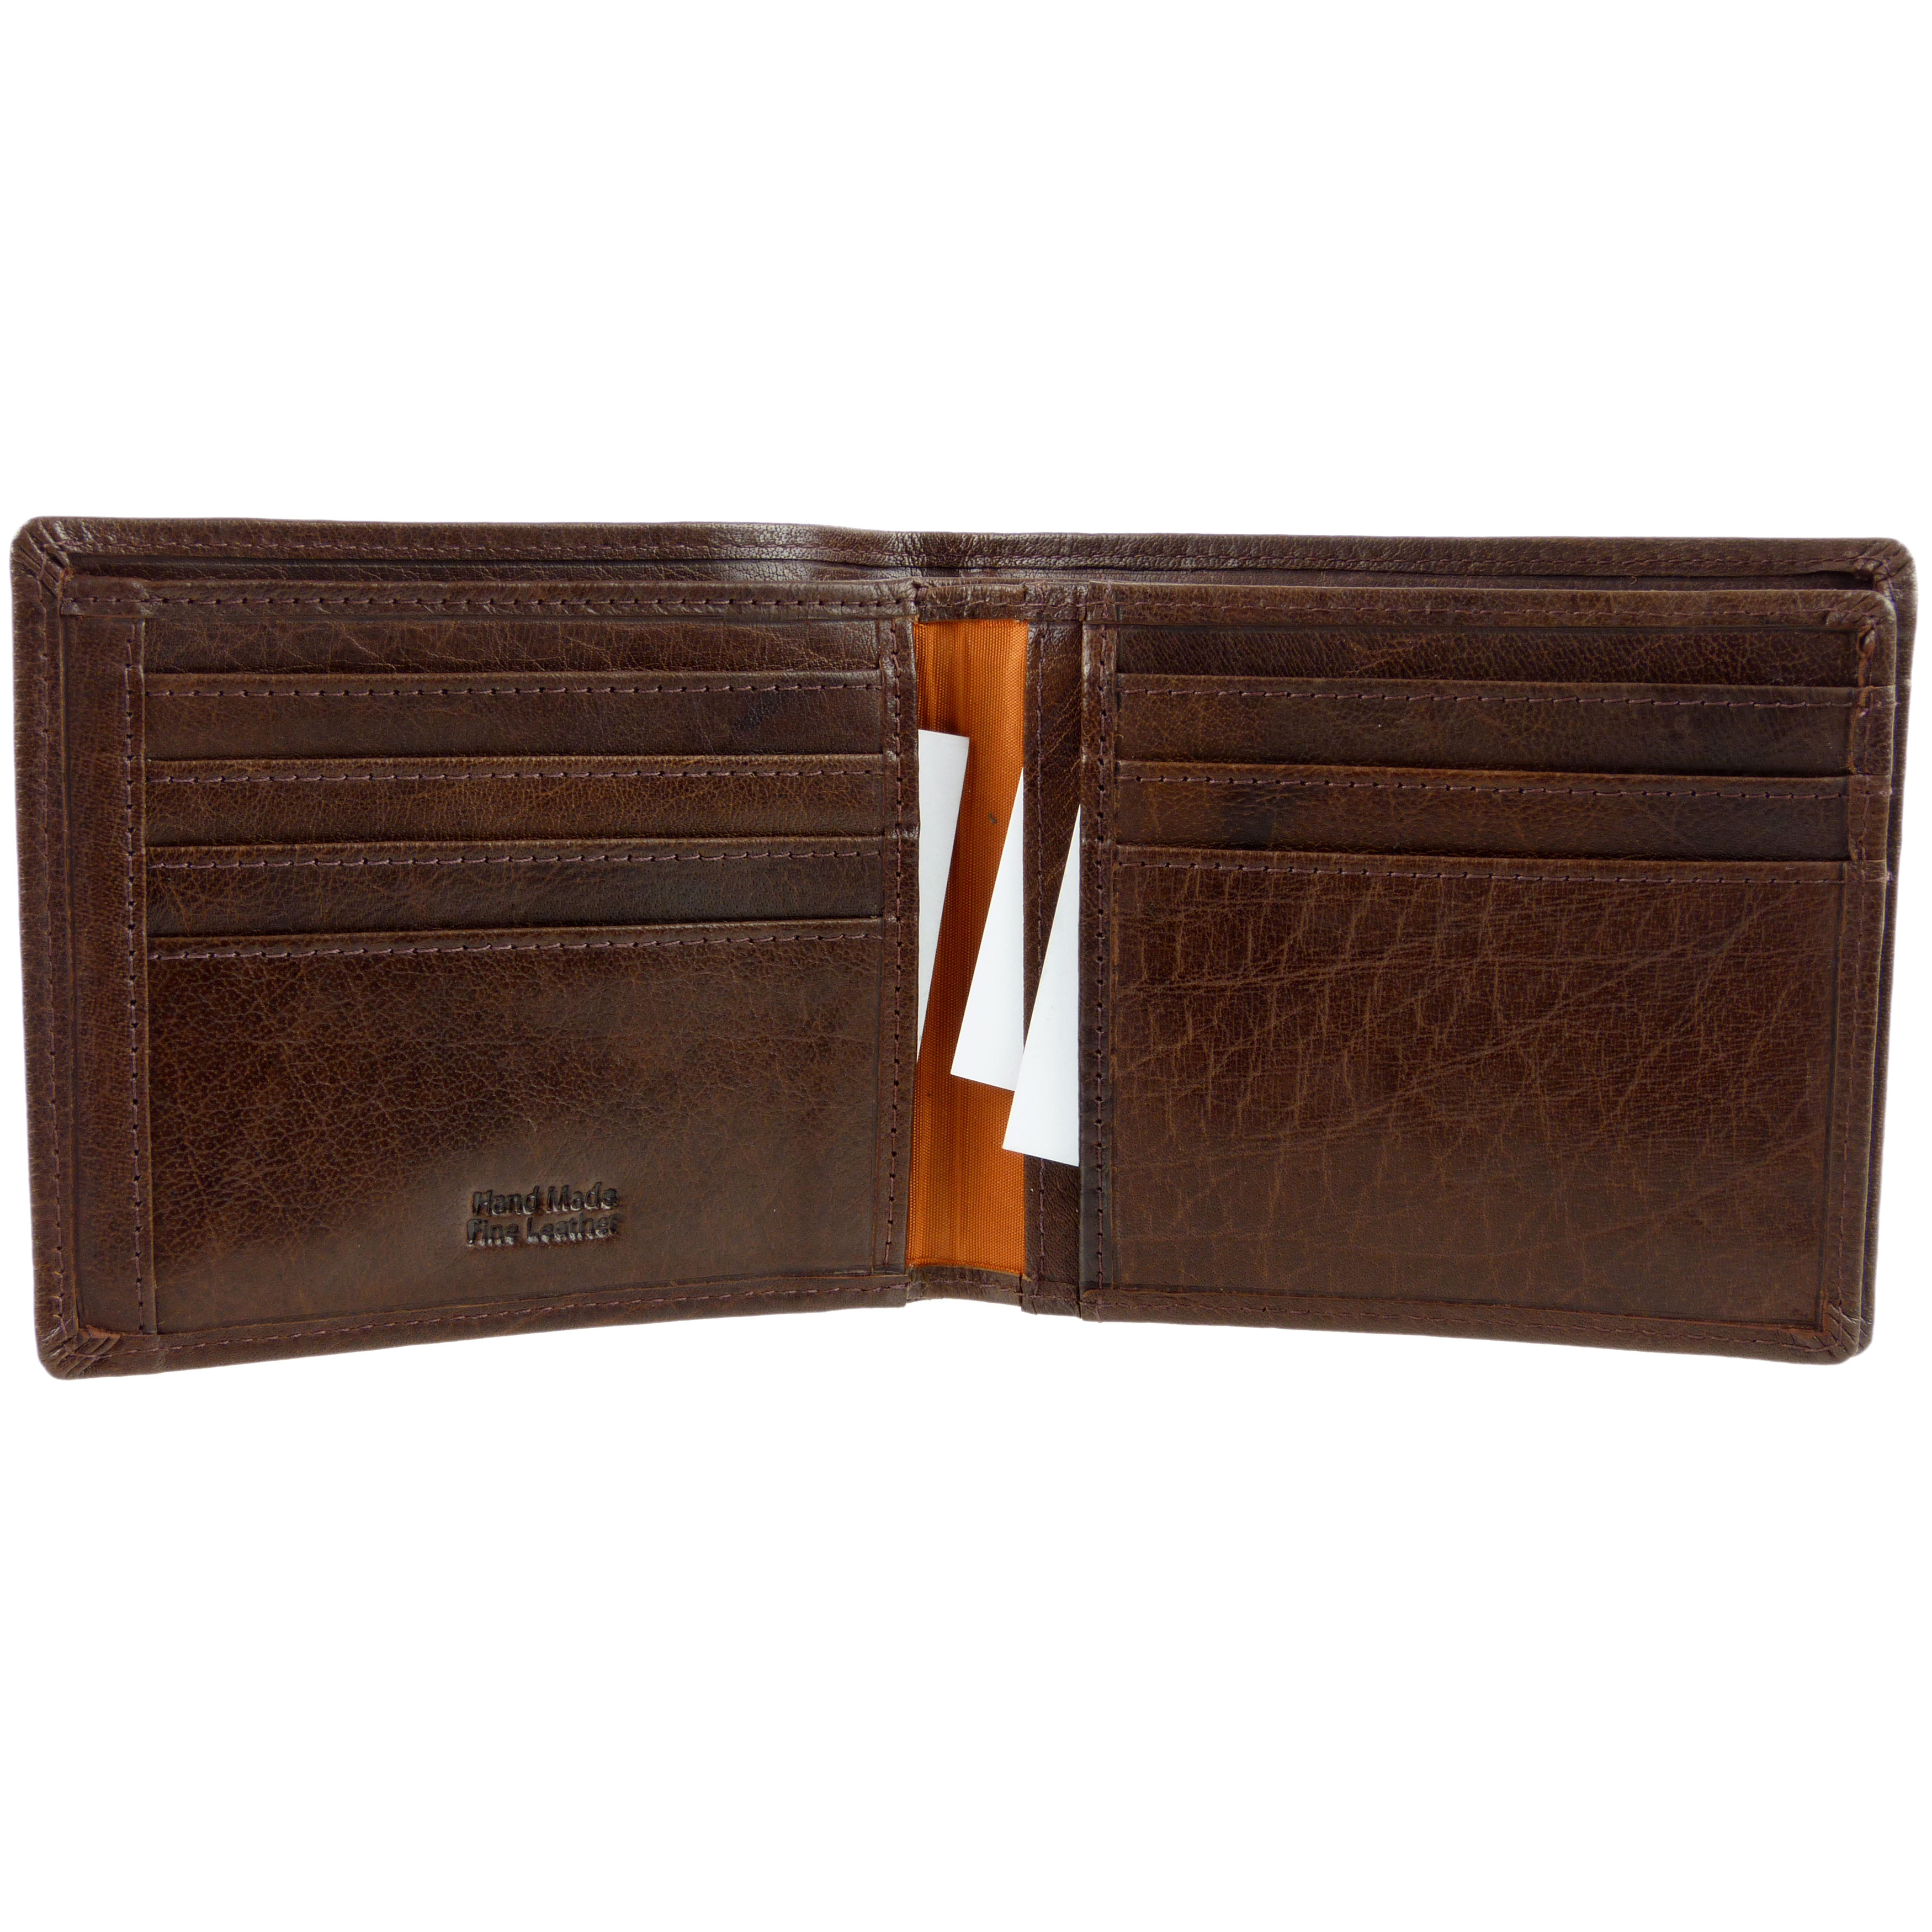 Rowallan of Scotland Leather Mens Wallet Verona Collection Veg Tan ...